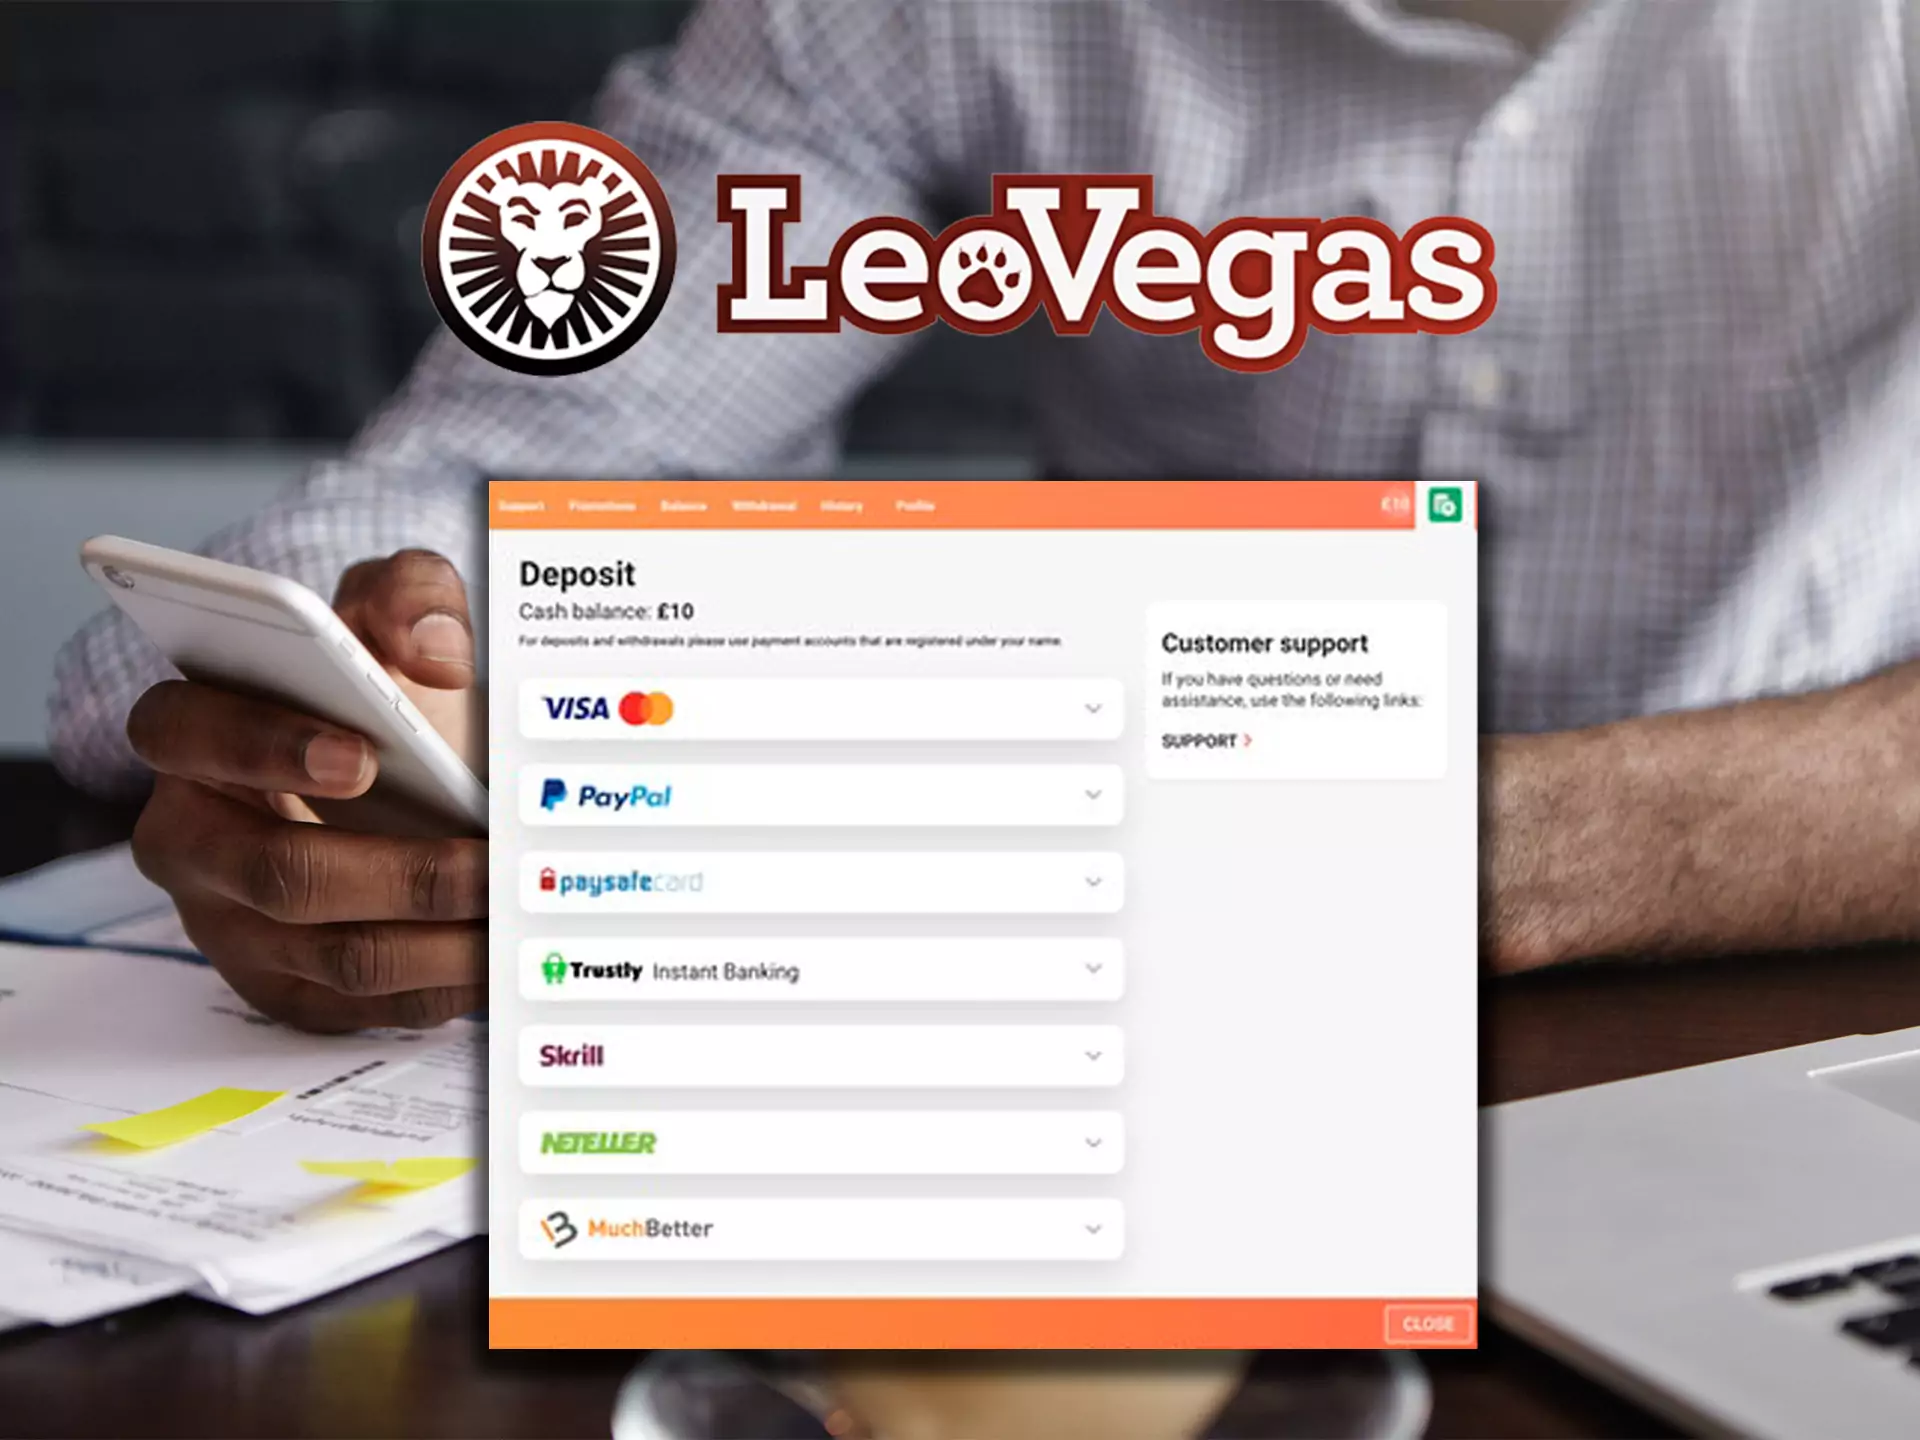 LeoVegas कई भुगतान प्रणालियों के साथ काम करता है जो इनिडा में लोकप्रिय हैं और भारतीय खिलाड़ियों के लिए सुविधाजनक हैं।